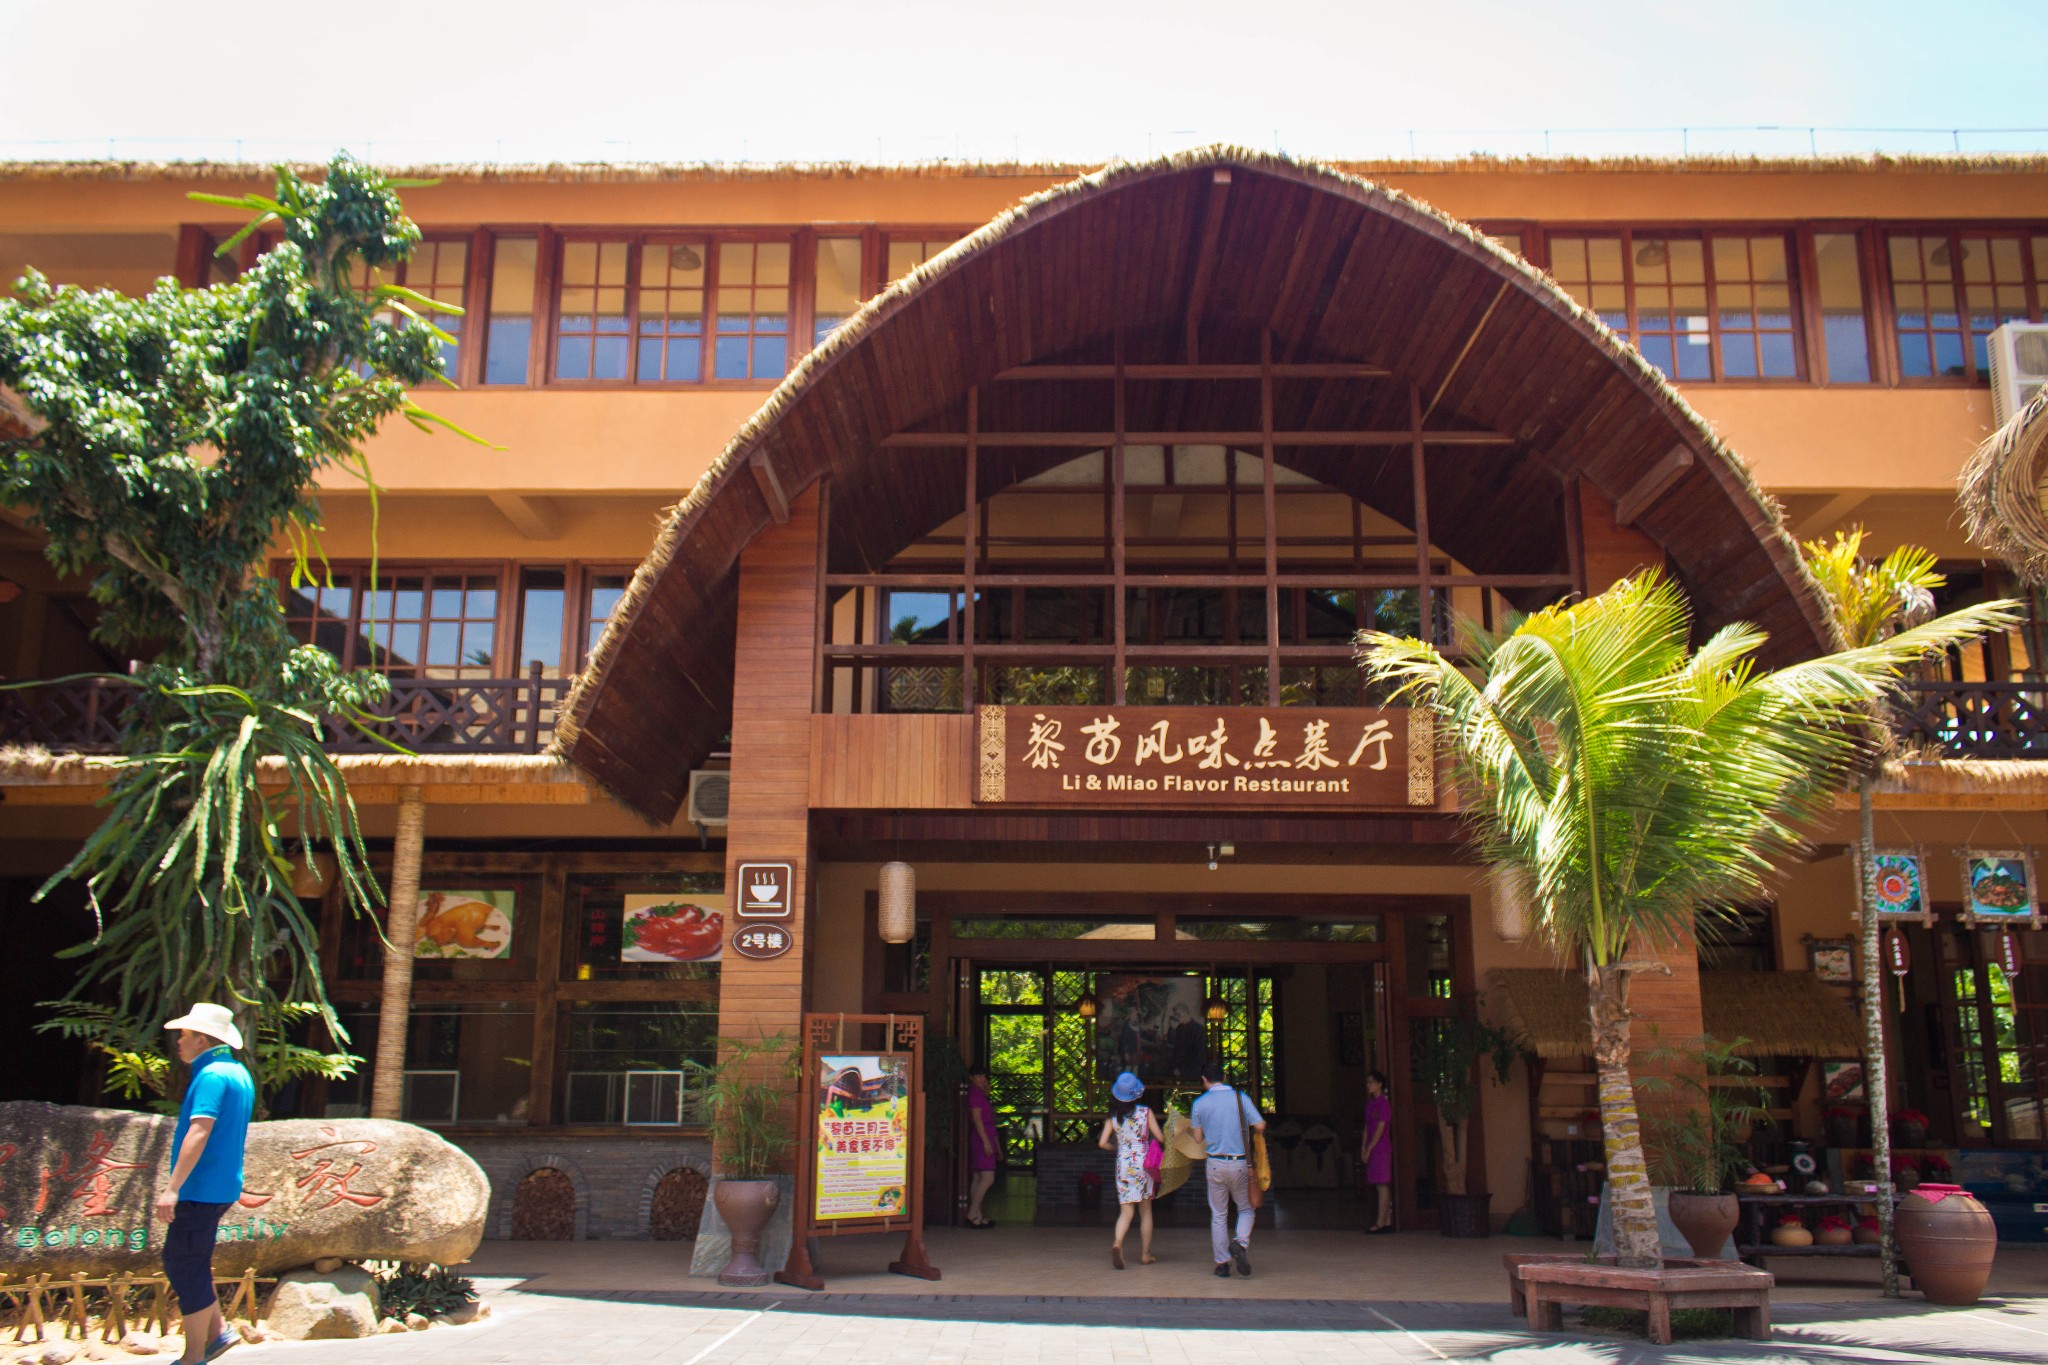 Sanya Betellang Valley Li Nationality Cultural Tourism Area